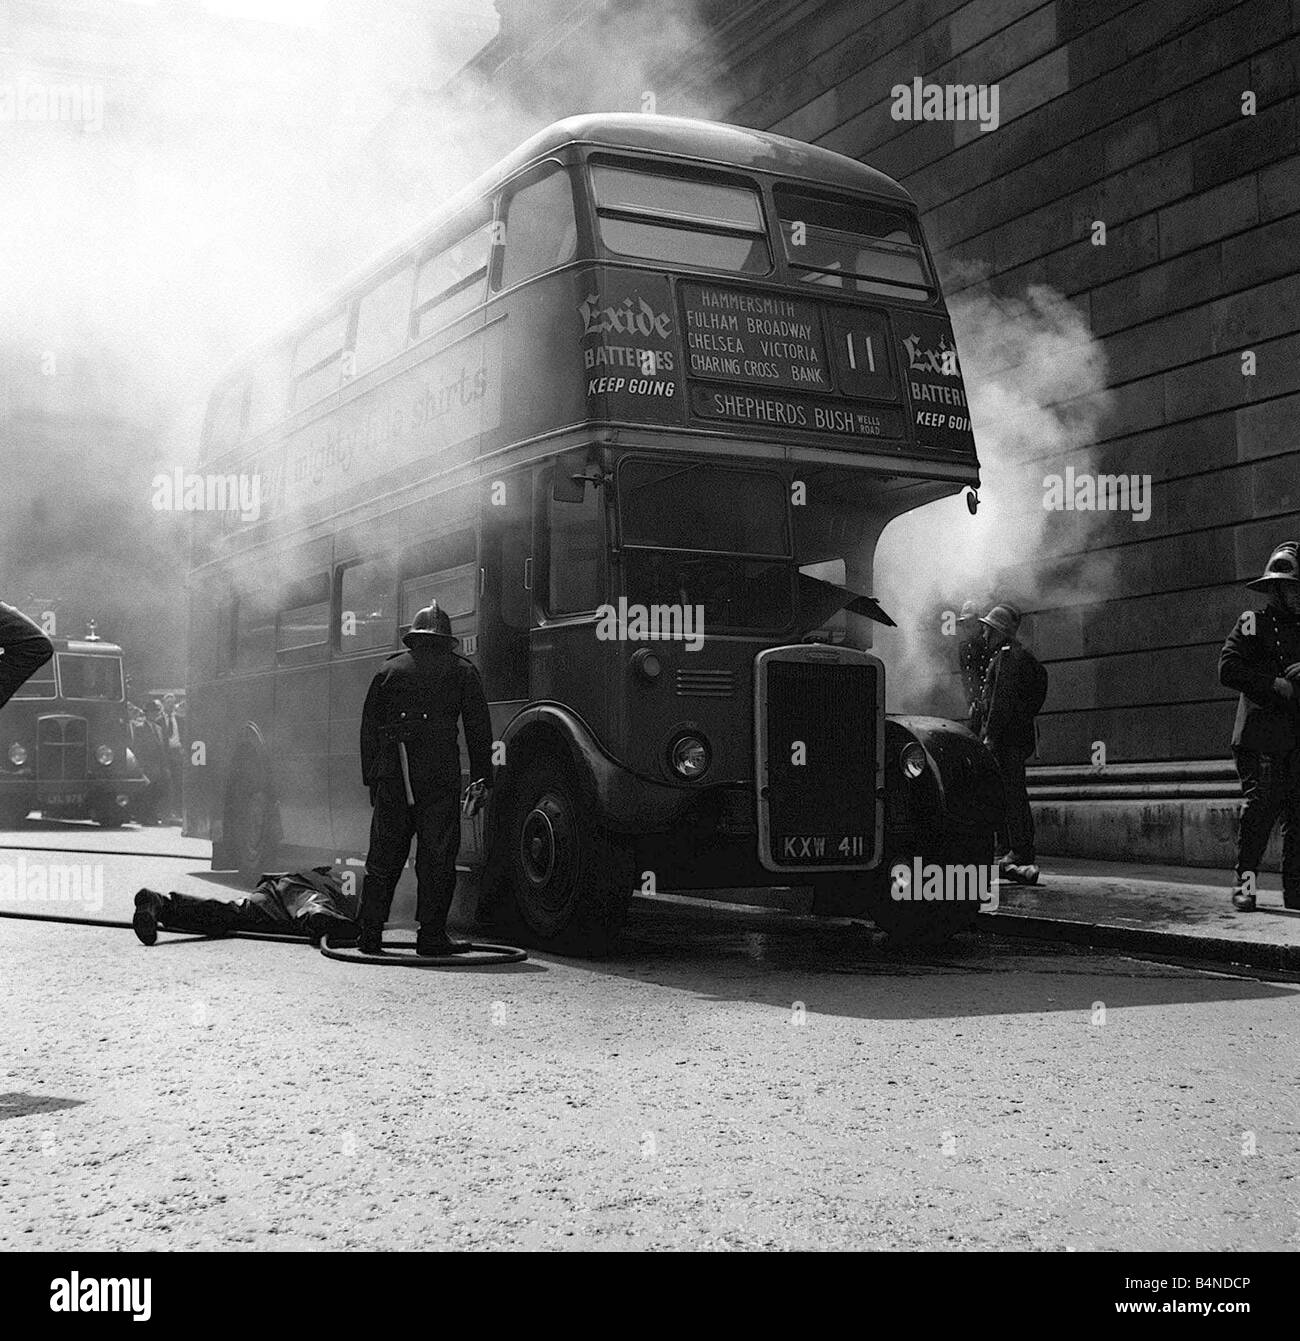 Bus à impériale rouge en feu mai 1959 pompiers tentent de lutter contre l'incendie Banque D'Images